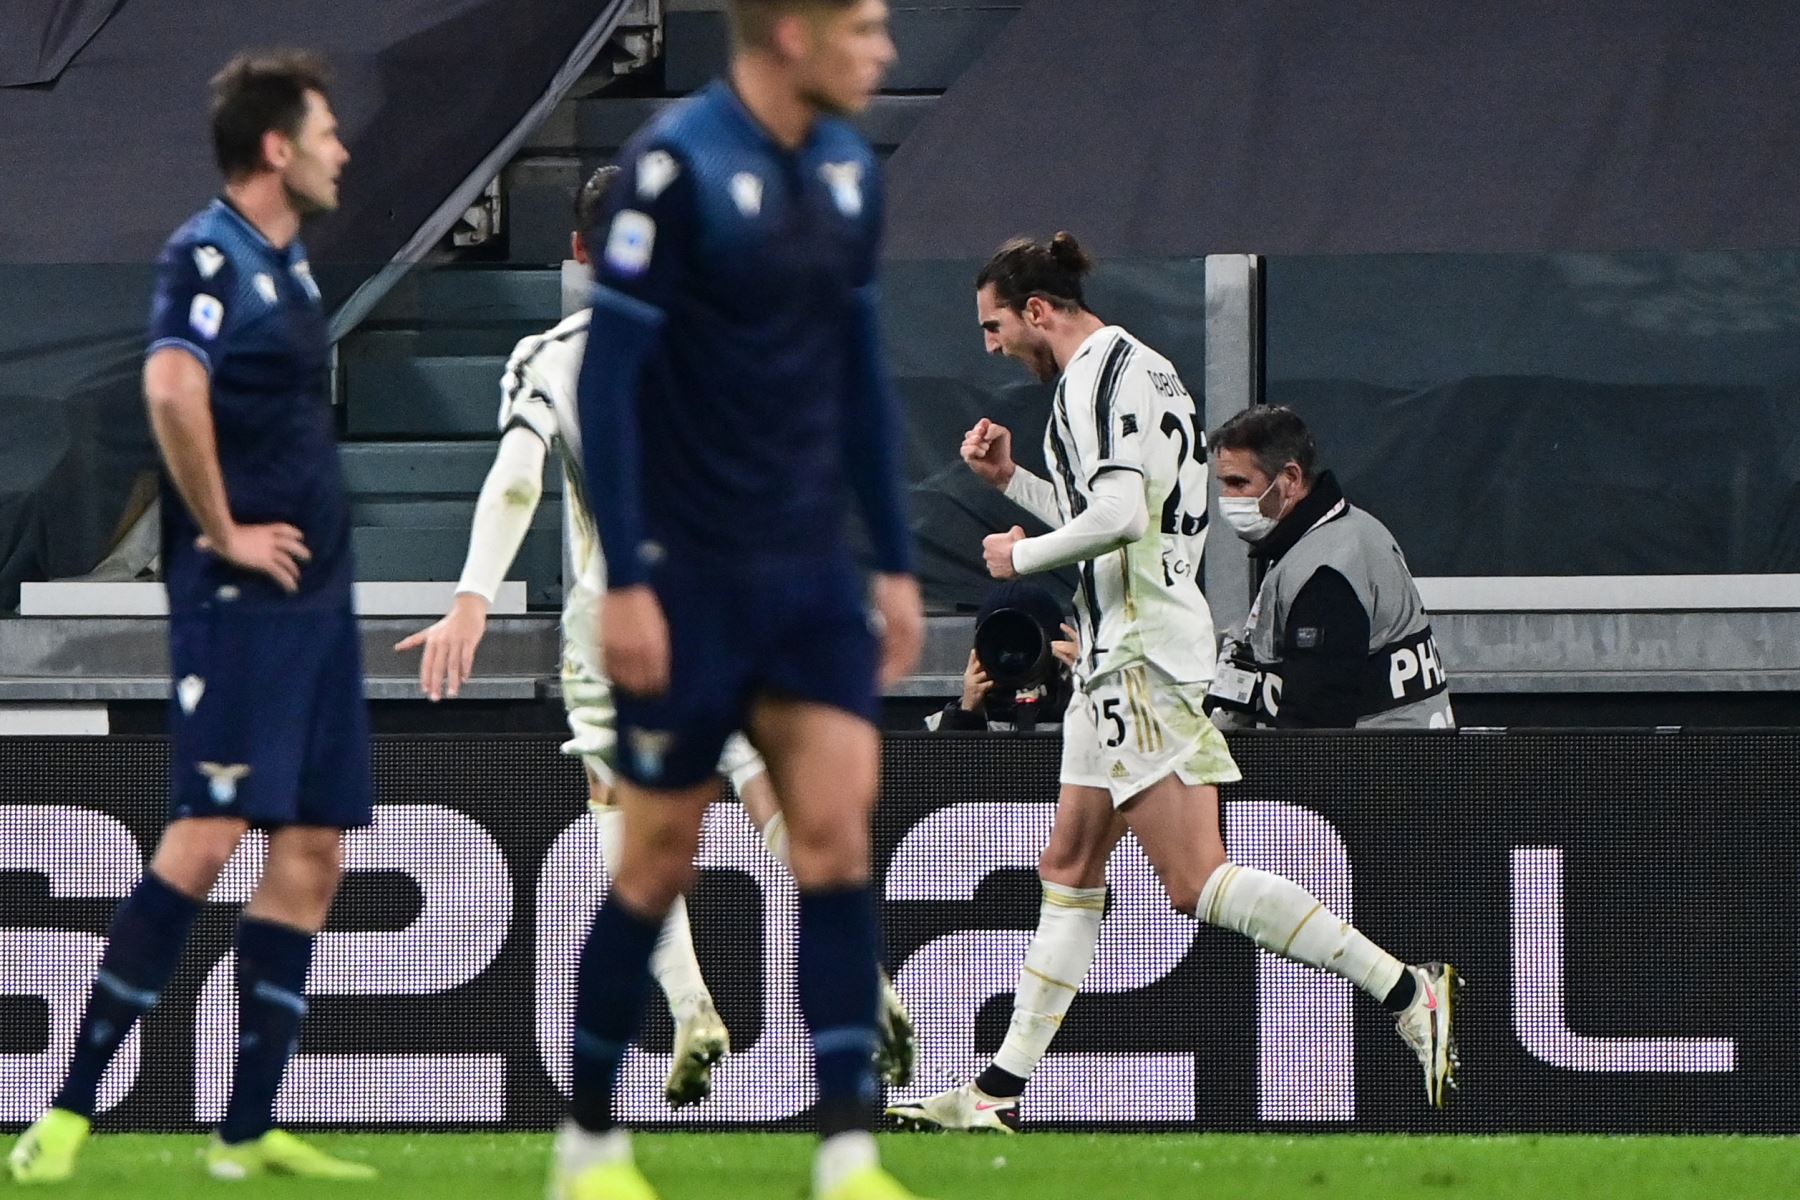 El centrocampista francés de la Juventus, Adrien Rabiot (R), celebra tras marcar un gol durante el partido de fútbol de la Serie A italiana entre la Juventus y la Lazio en el estadio de la Juventus en Turín, en el norte de Italia. Foto: AFP